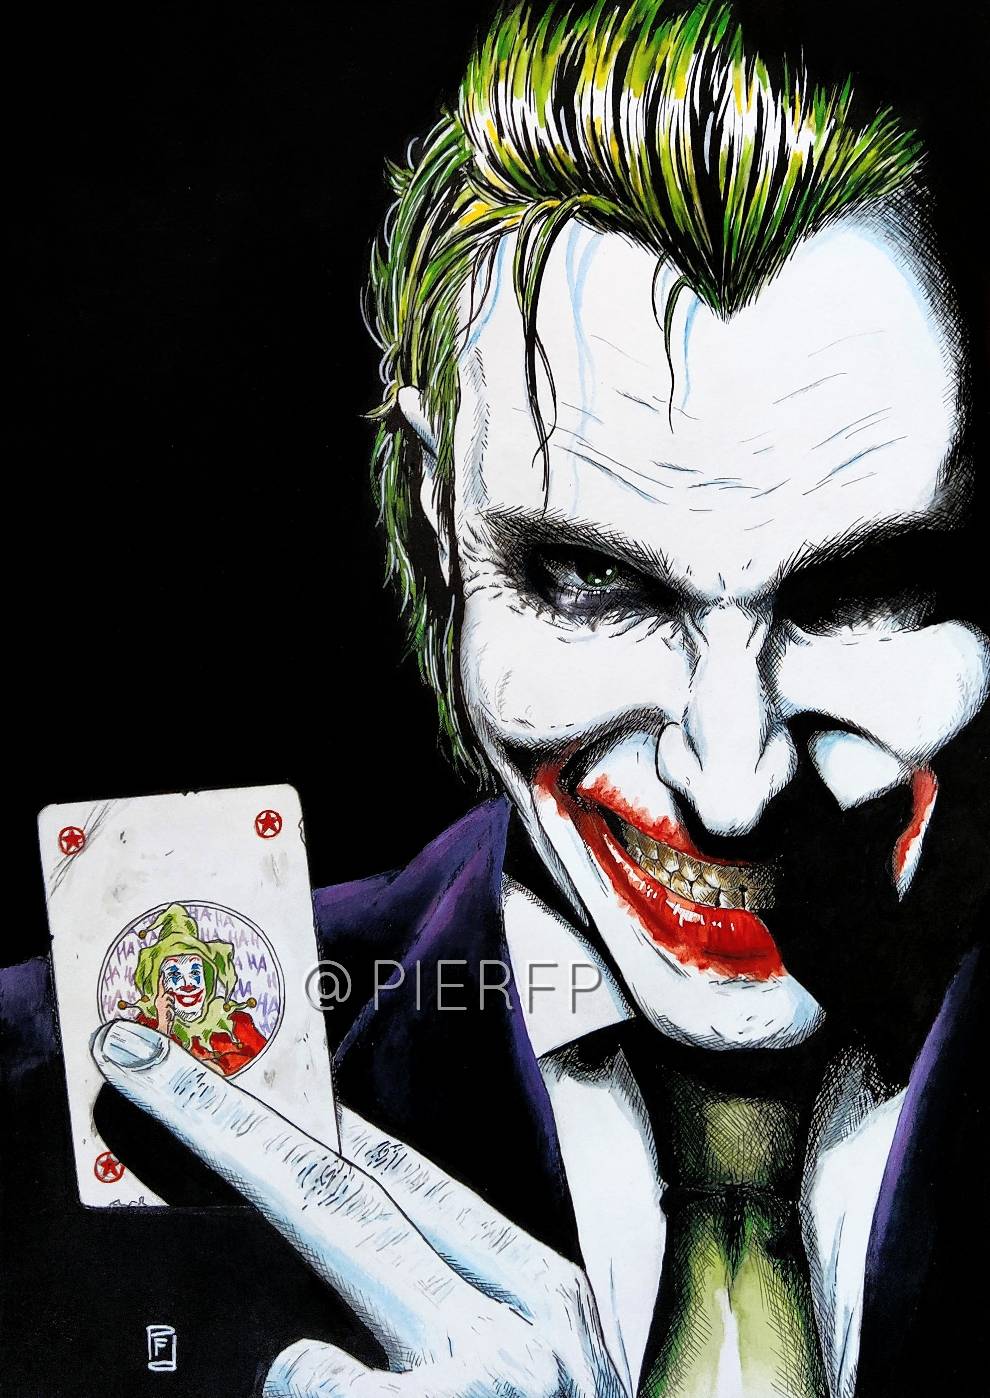 The Man Who Laughs (Joker fanart) by Pierfp on DeviantArt